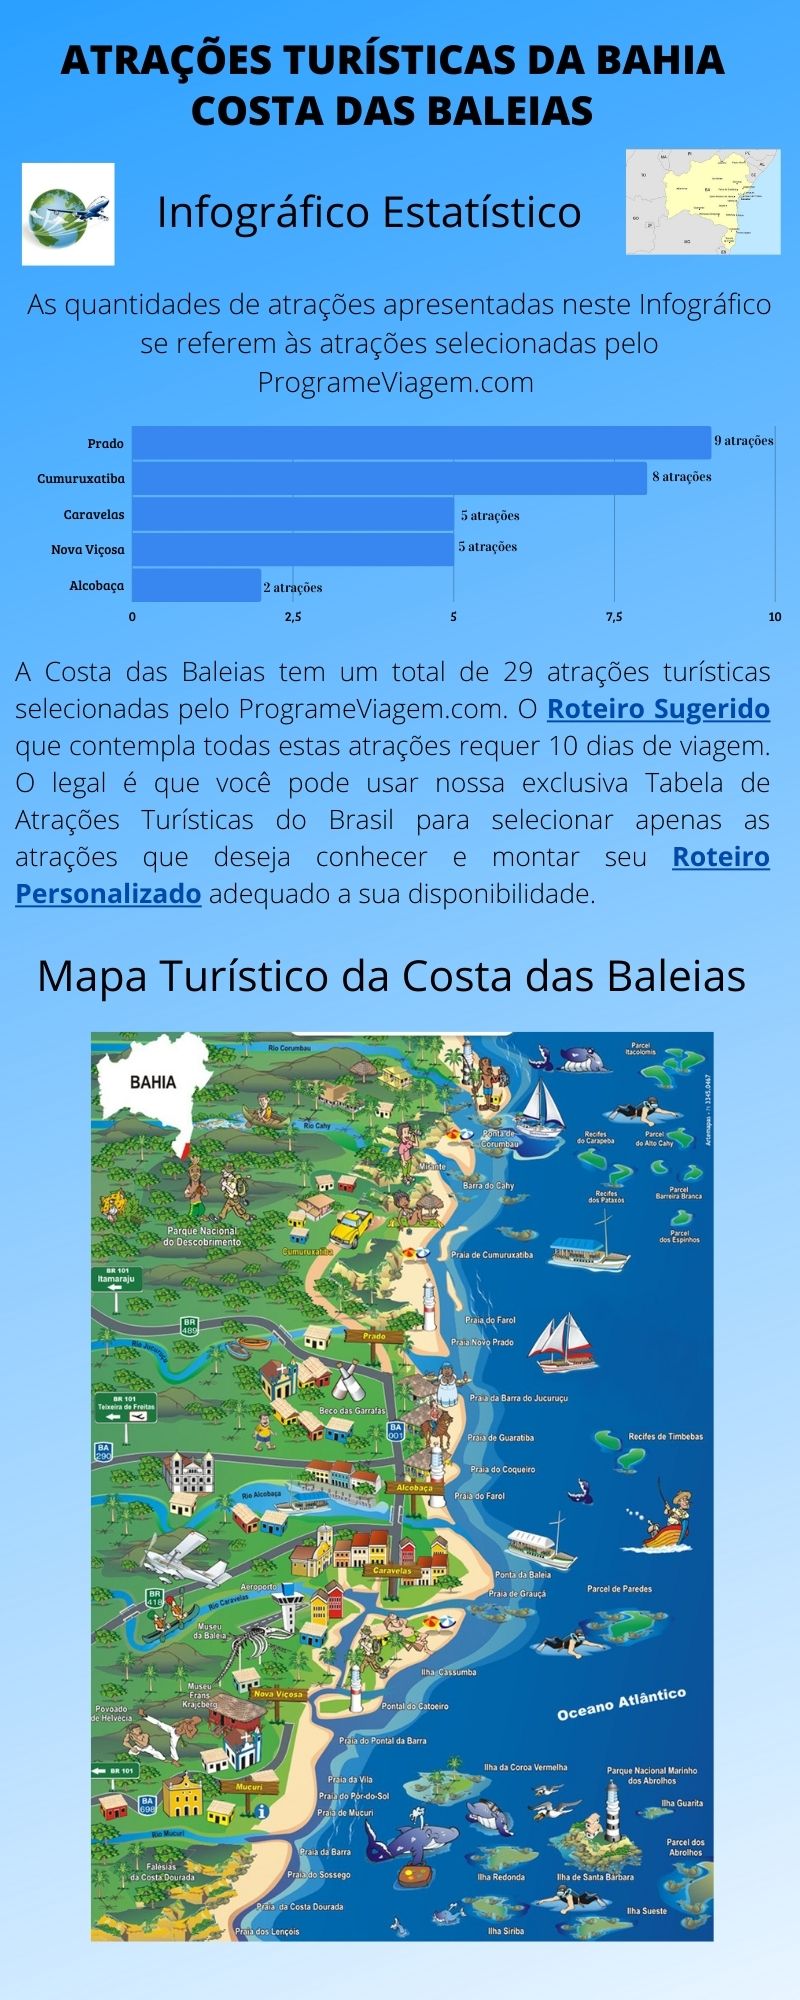 Infográfico Atrações Turísticas da Bahia (Costa das Baleias)